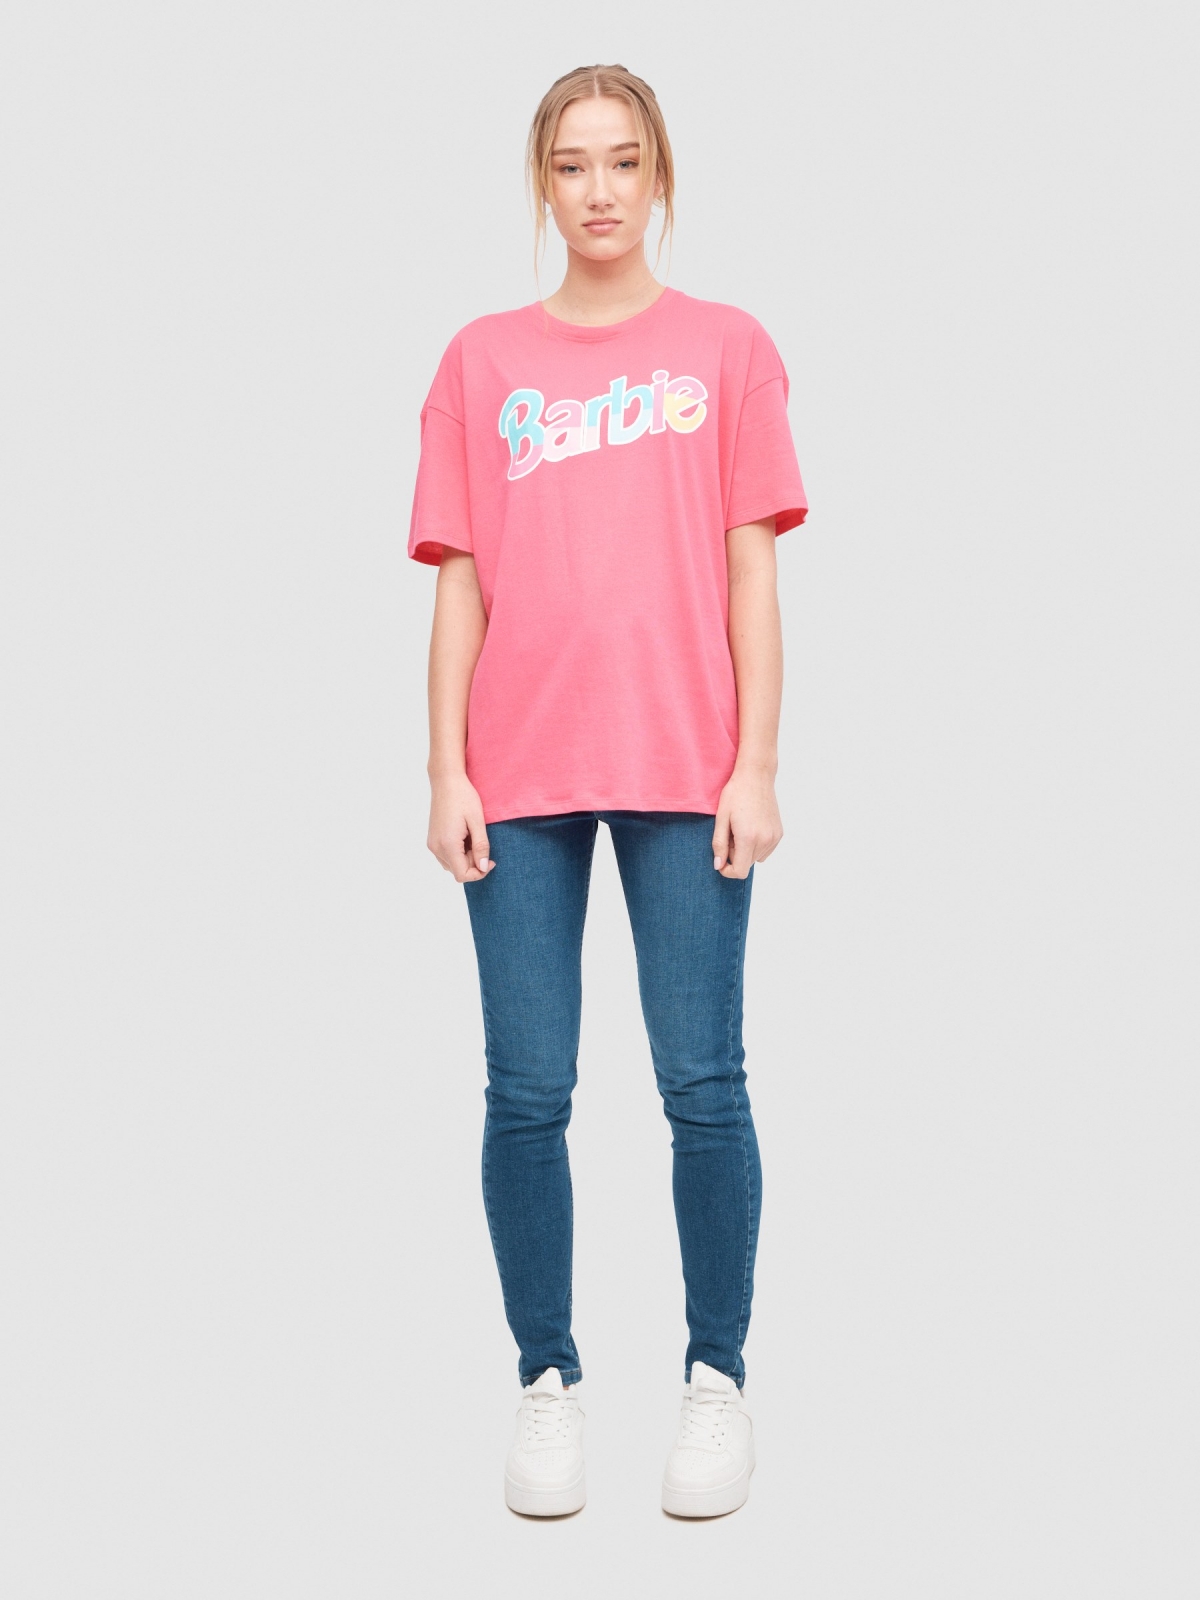 T-shirt oversize Barbie rosa vista geral frontal